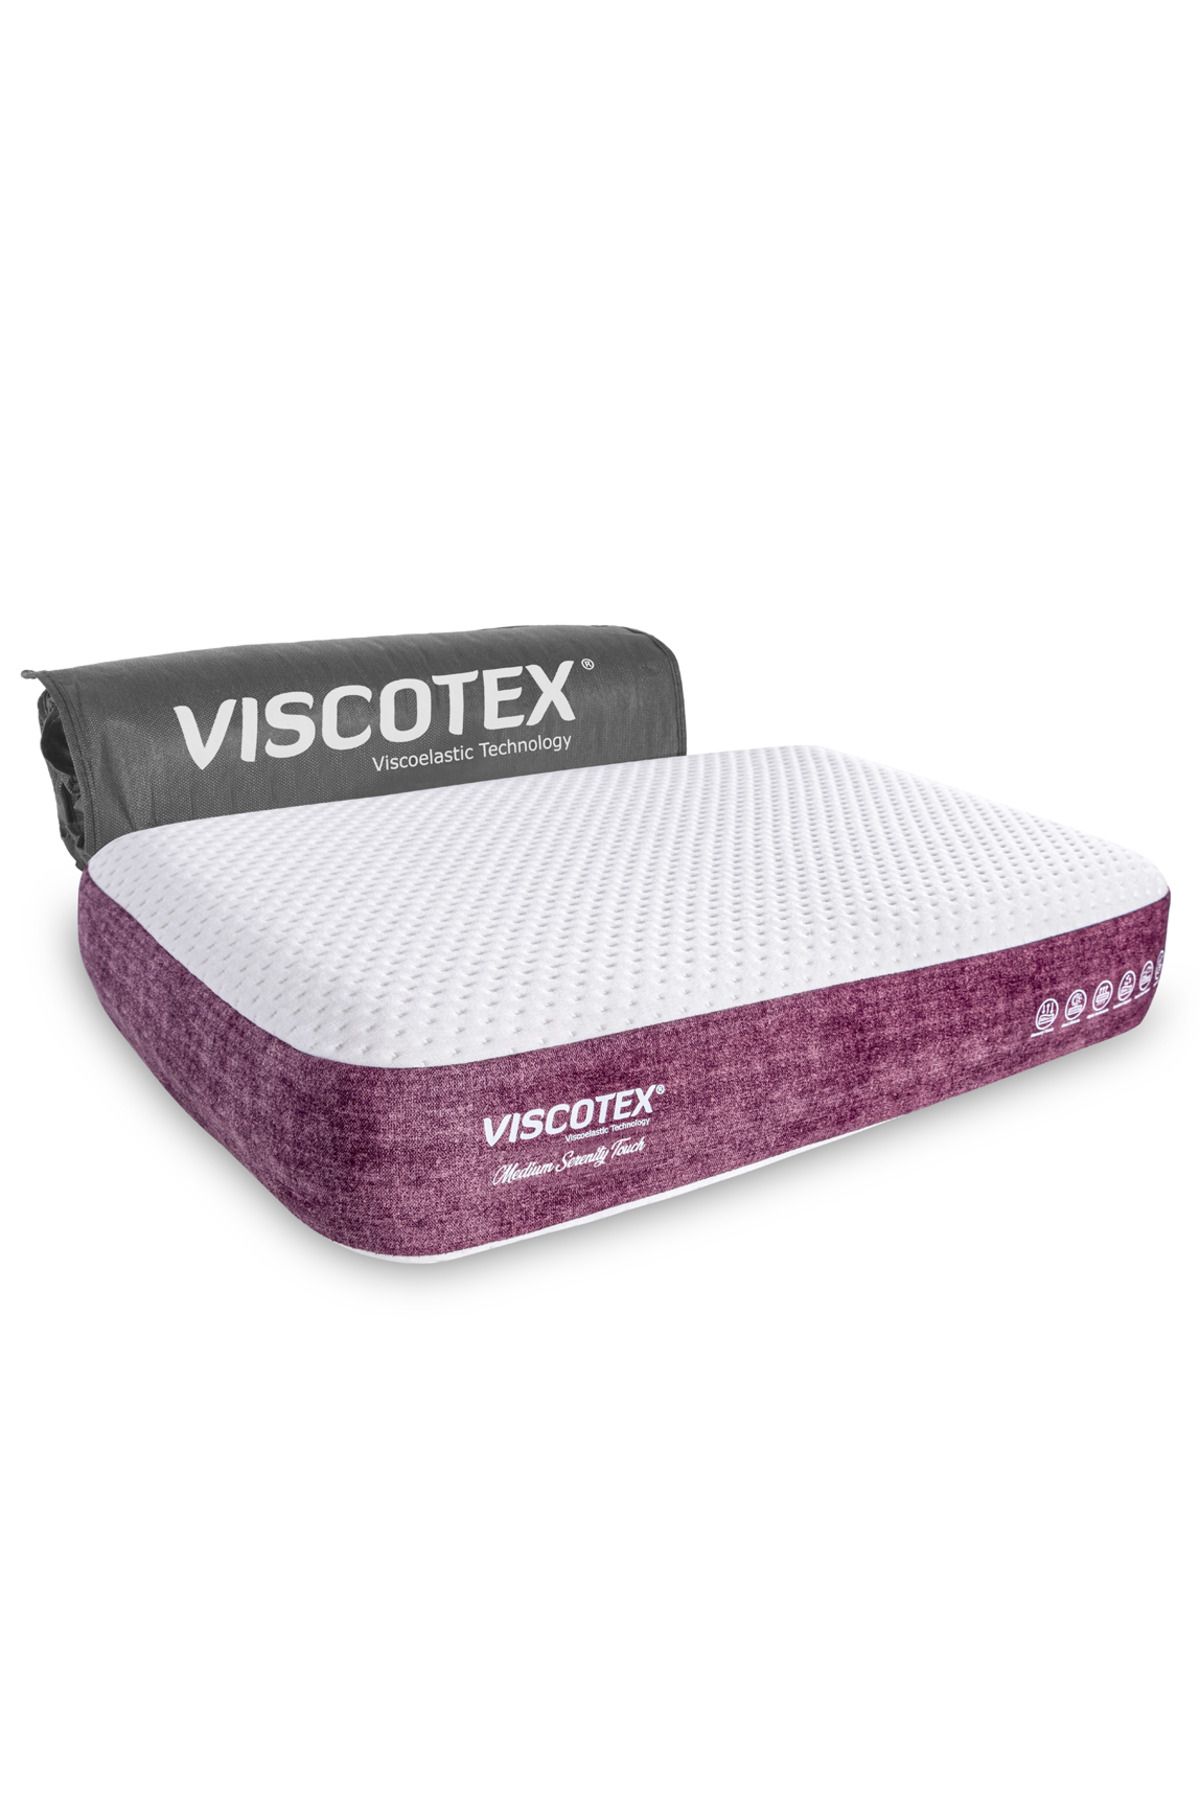 VİSCOTEX Medium Serenity Ergonomik Visco Yastık 65x43x12cm Boyun Ağrıları Için Orta Sert Hafızalı Baş Yastığı